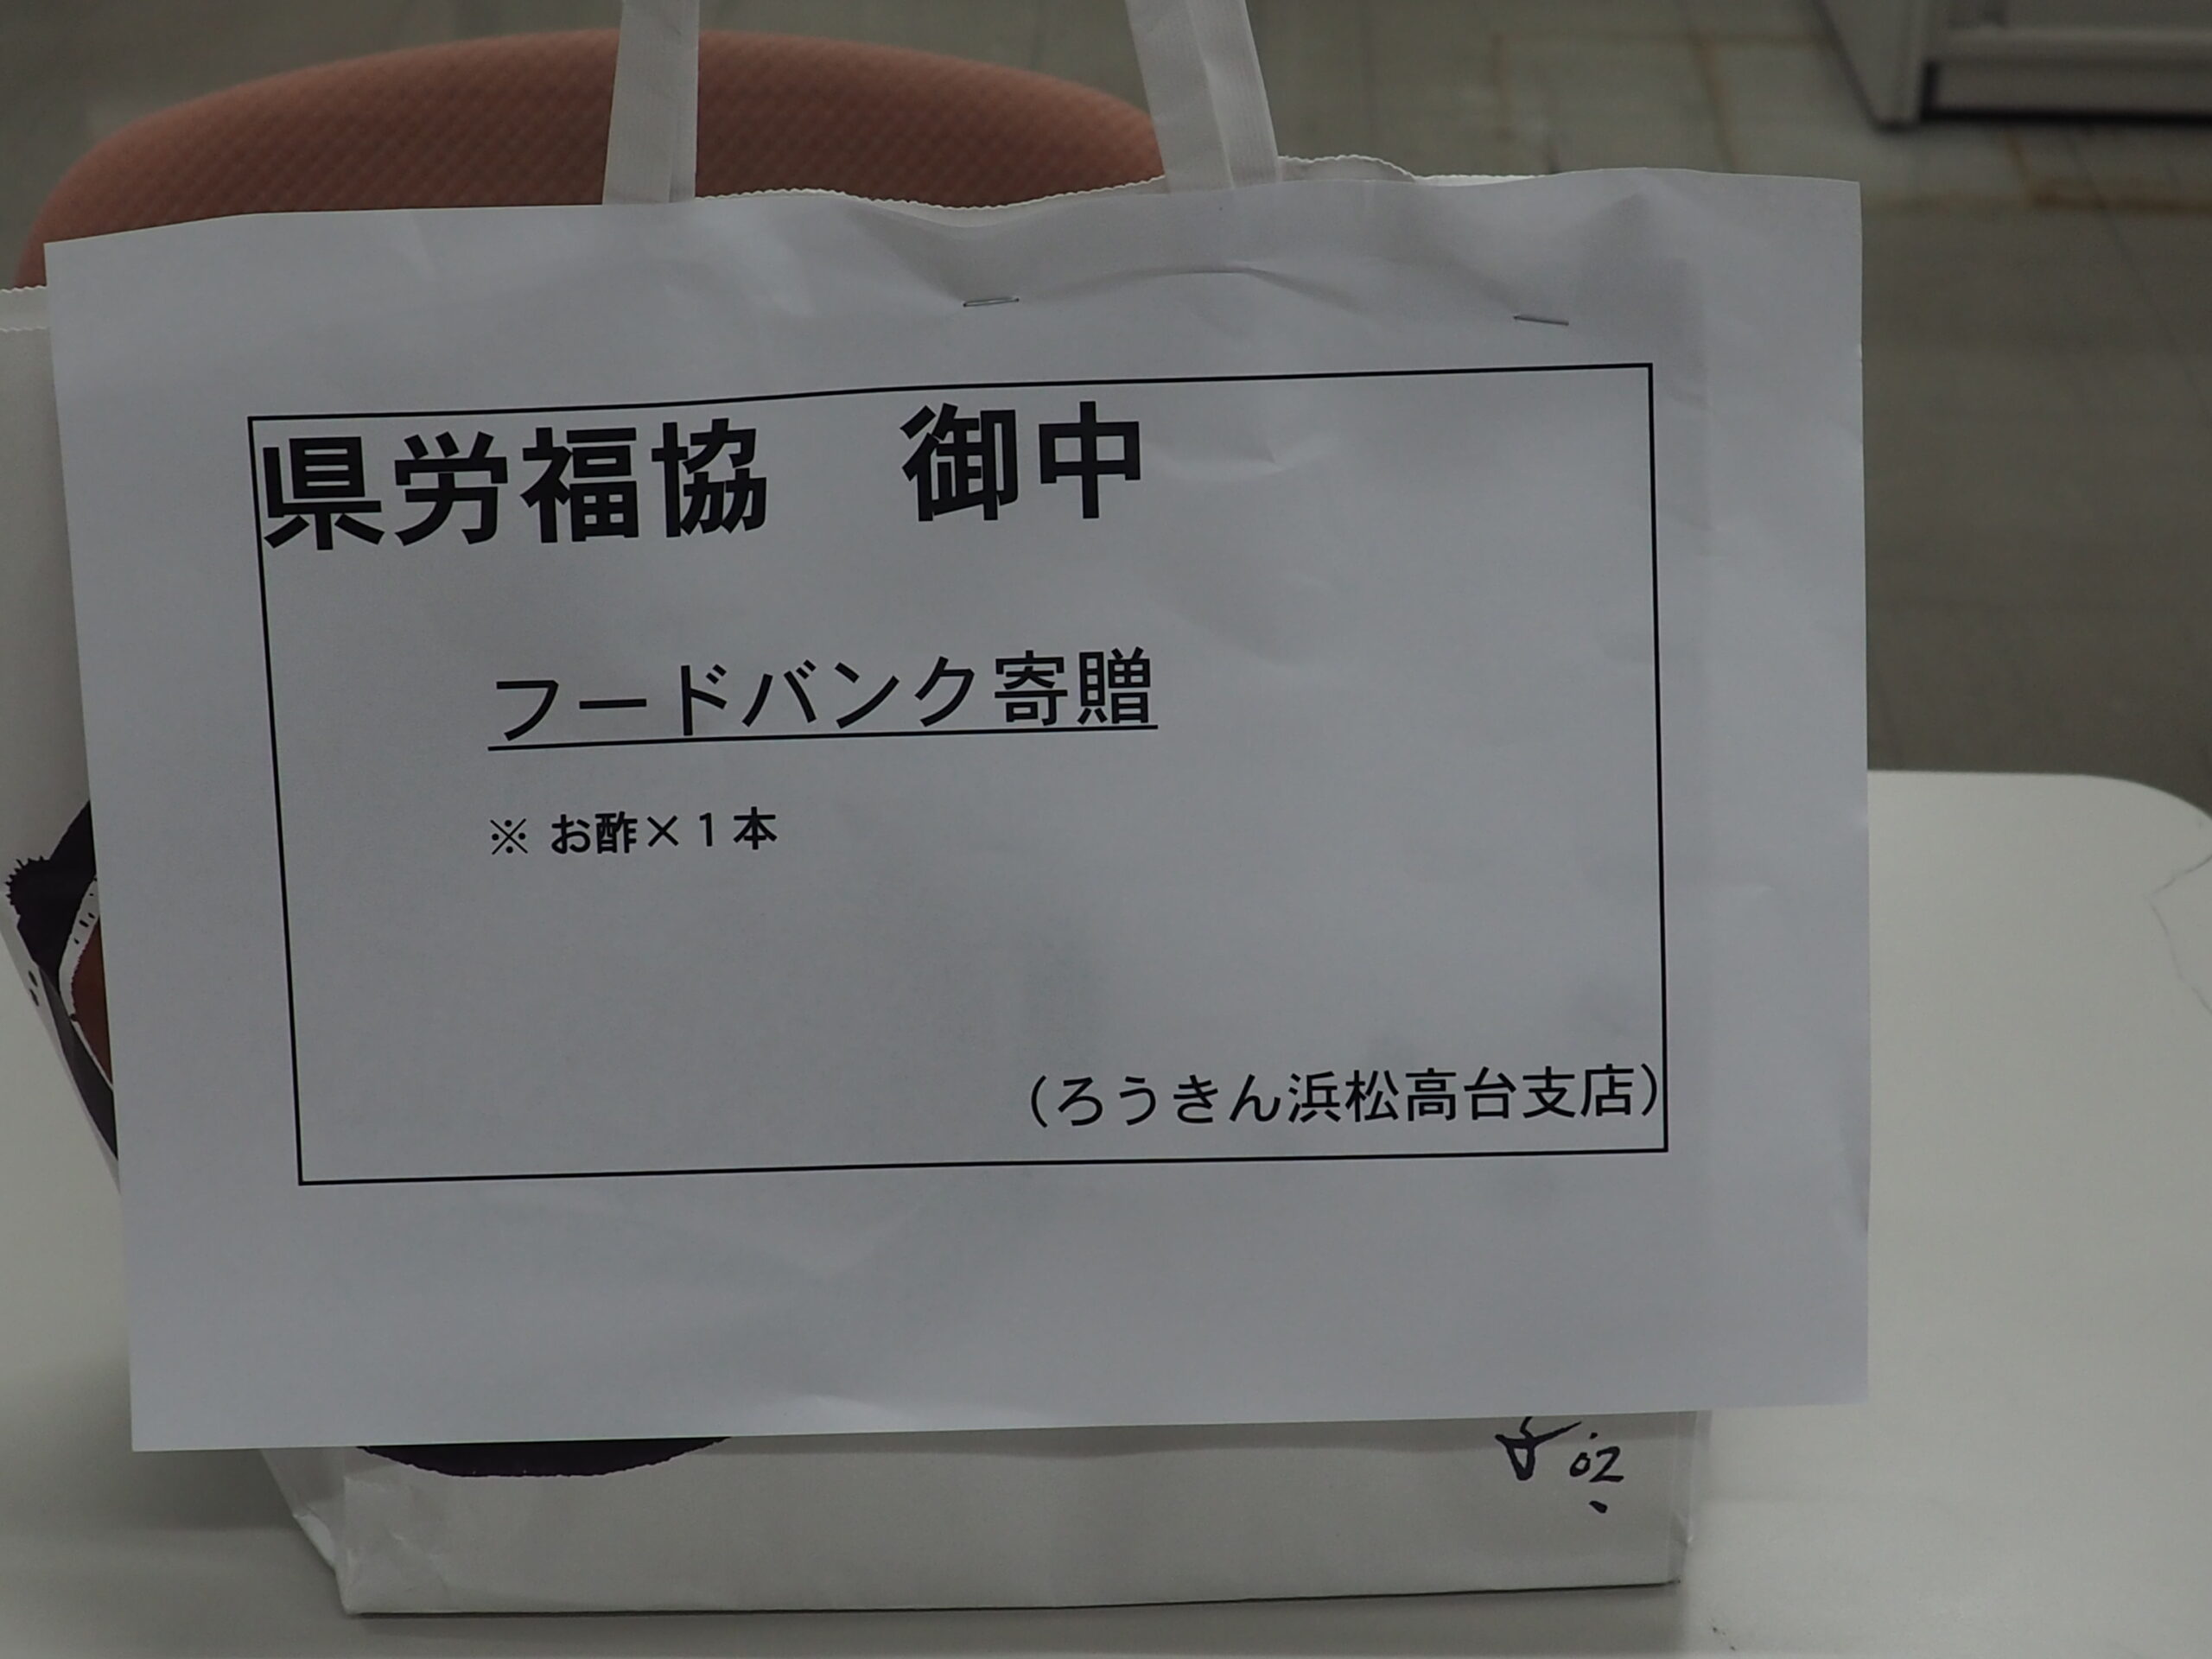 ろうきん浜松高台支店と小糸製作所労組から食品をいただきました。